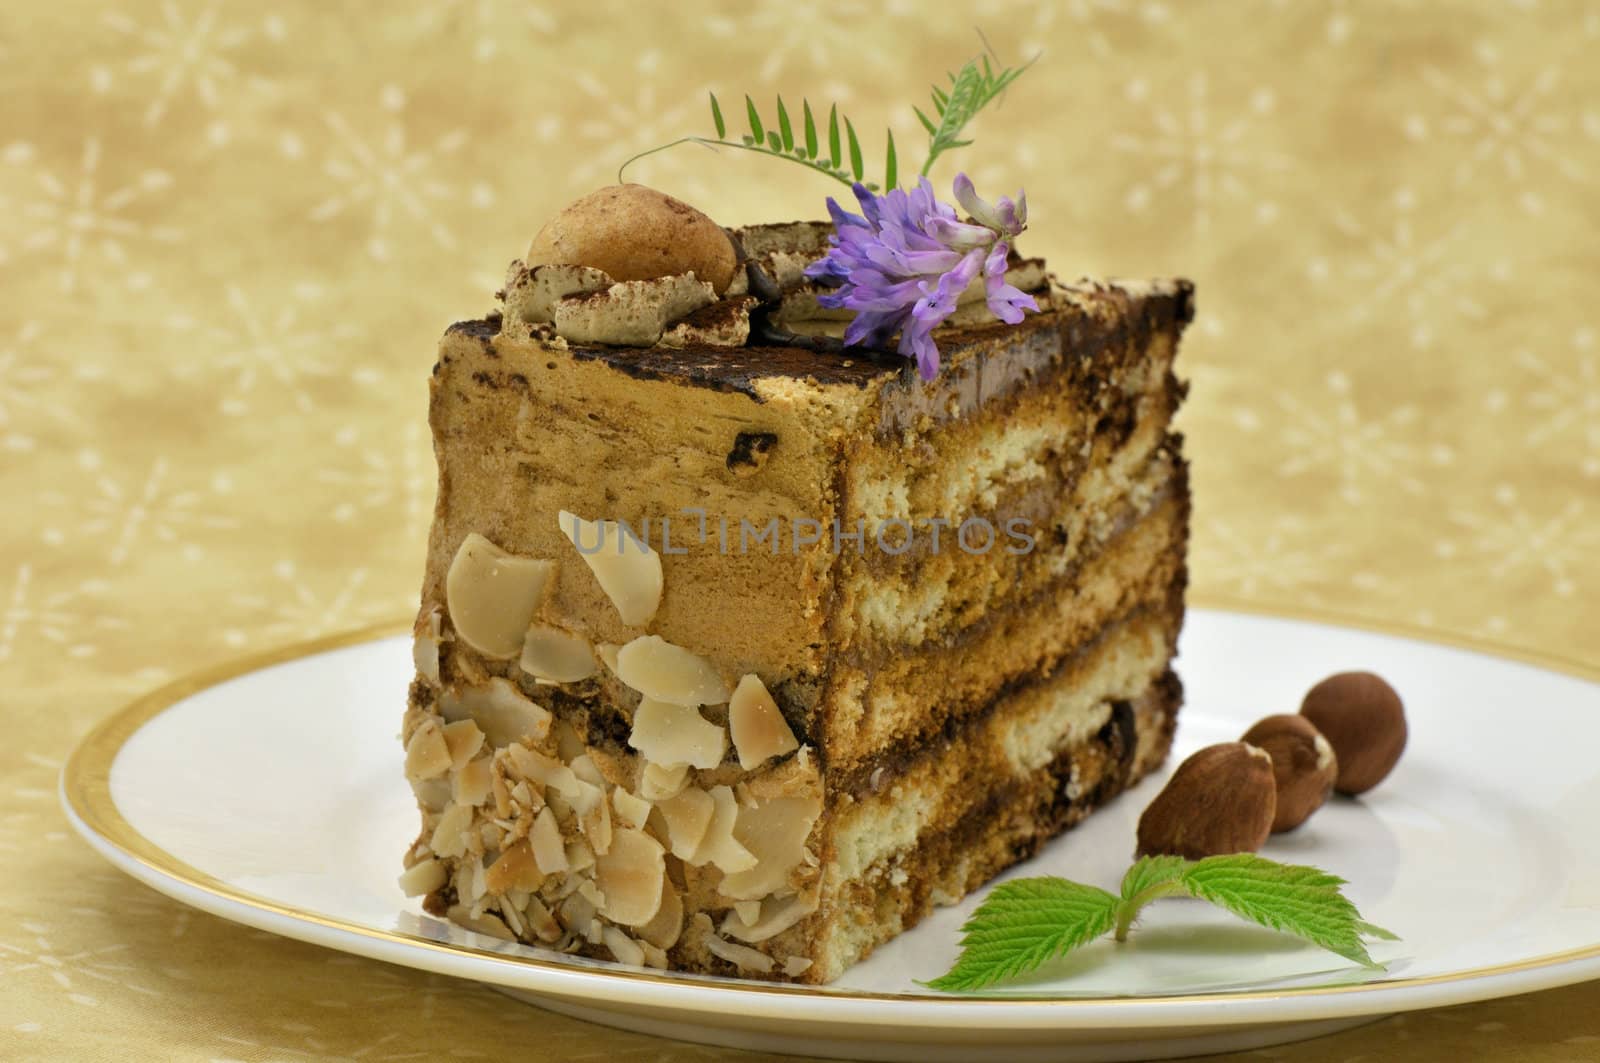 Hazelnut and chocolate cake by Hbak